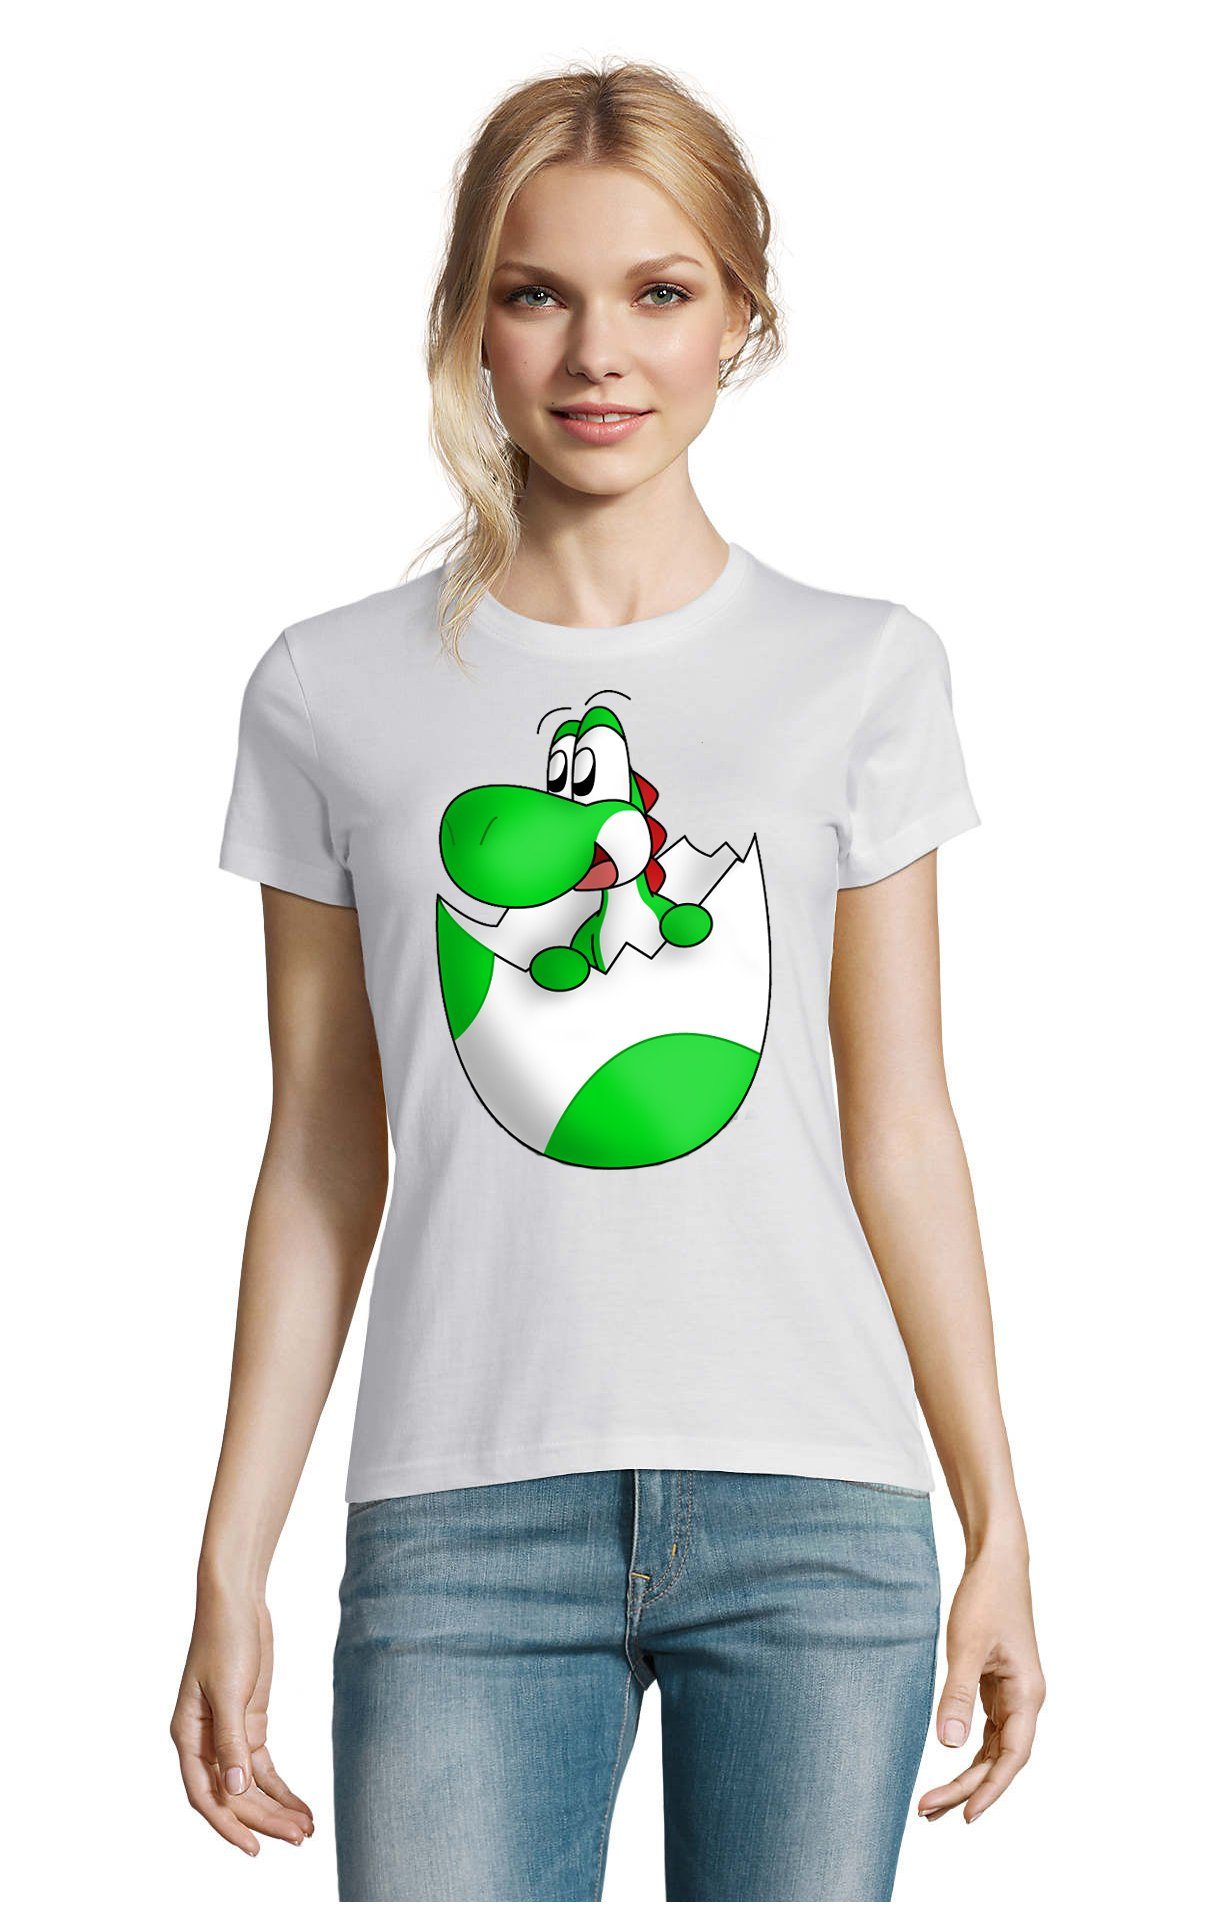 Mario Konsole Brownie Damen Gaming Yoshi T-Shirt Nintendo Blondie Baby Weiss Ei & Spiel